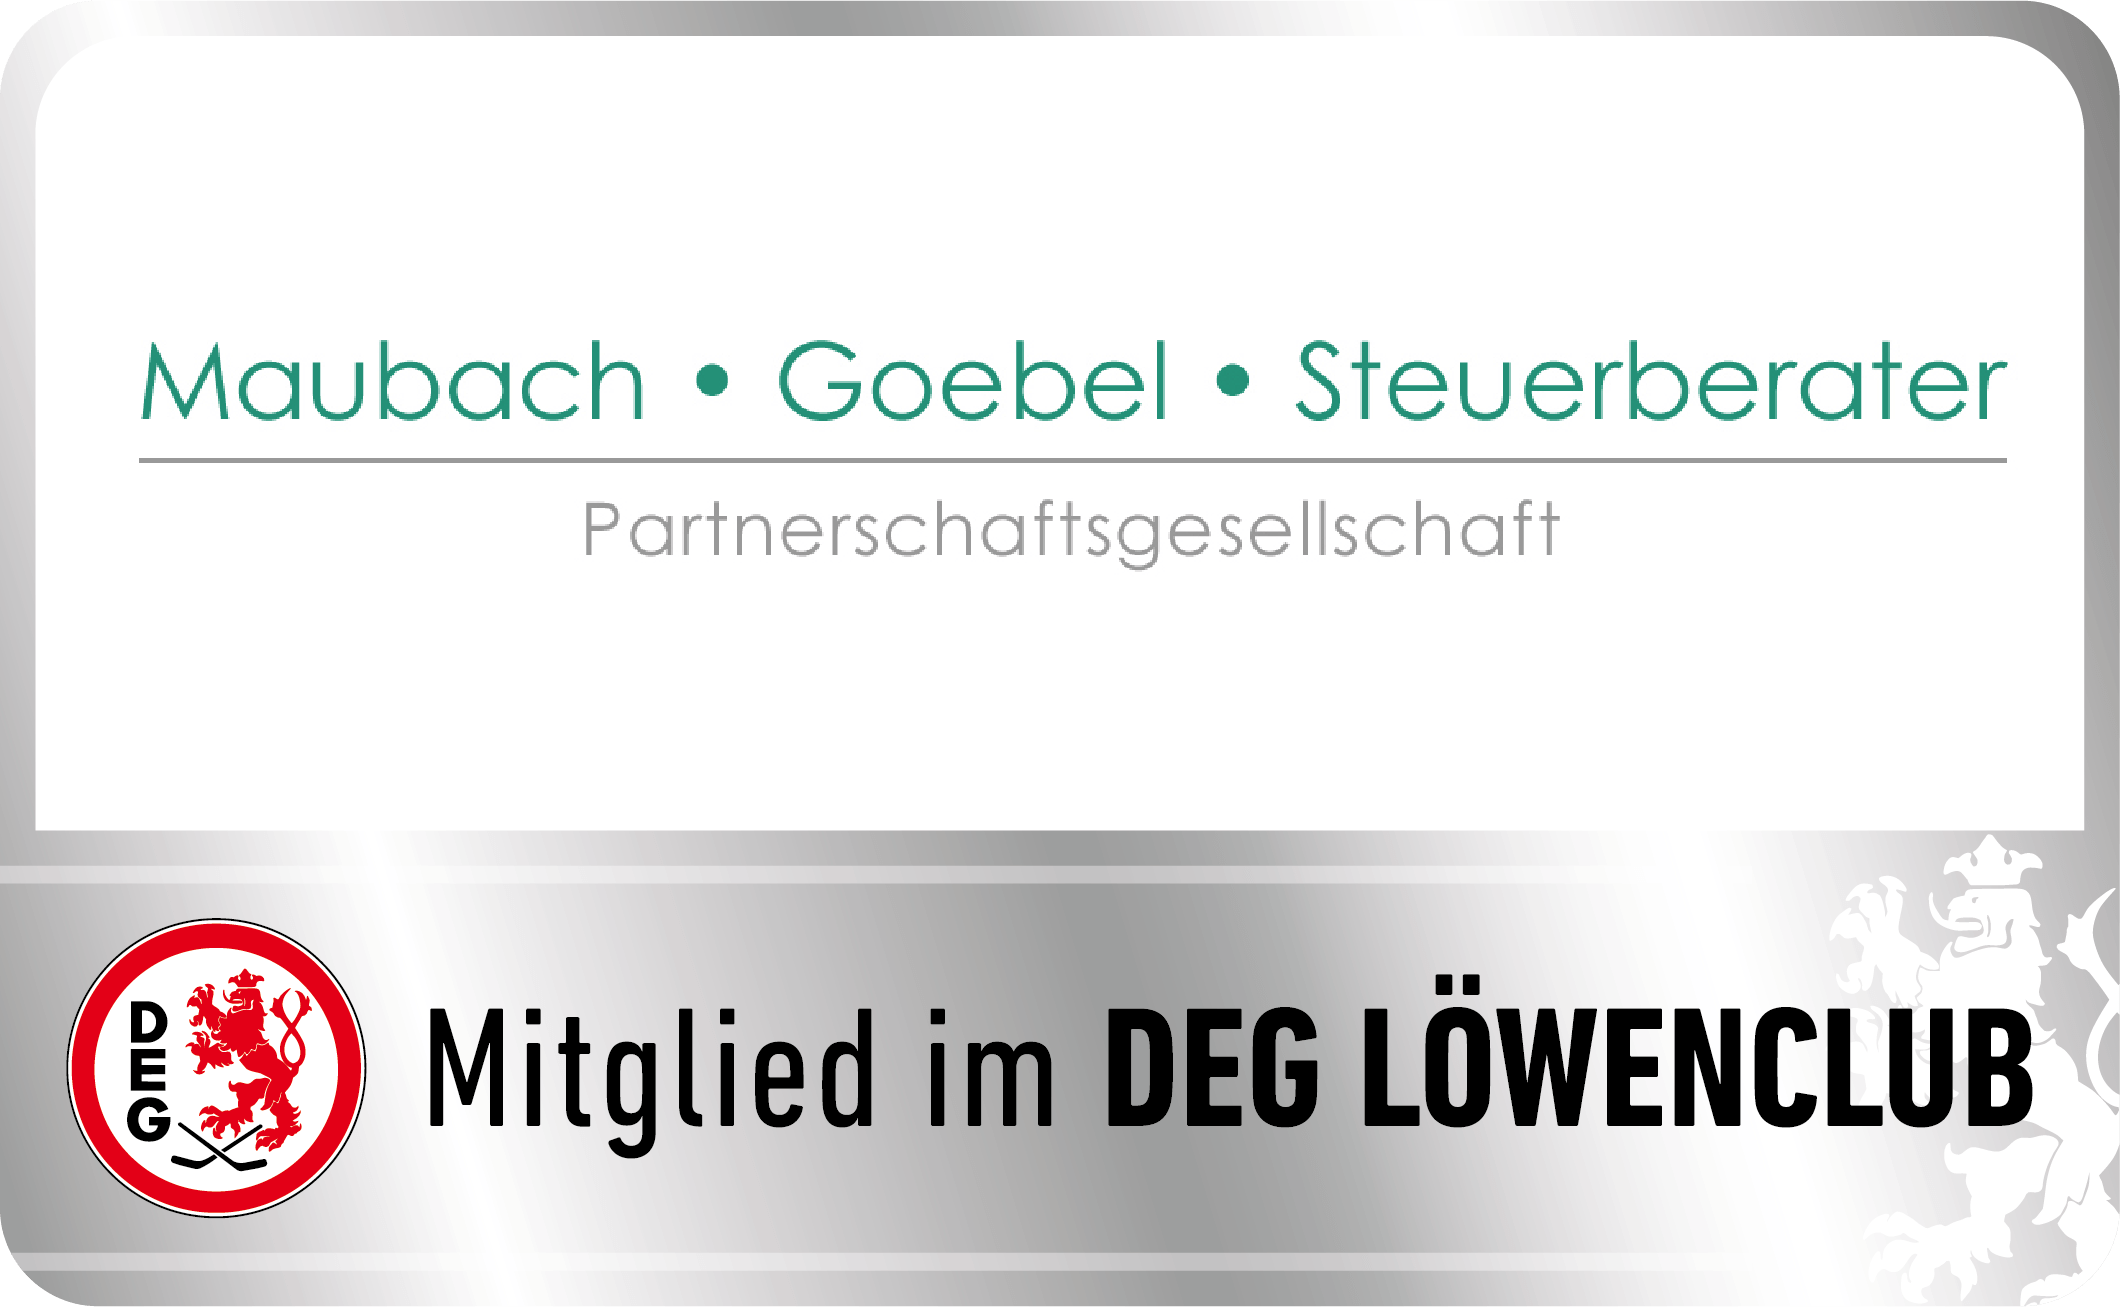 http://www.steuerberater-maubach.de/